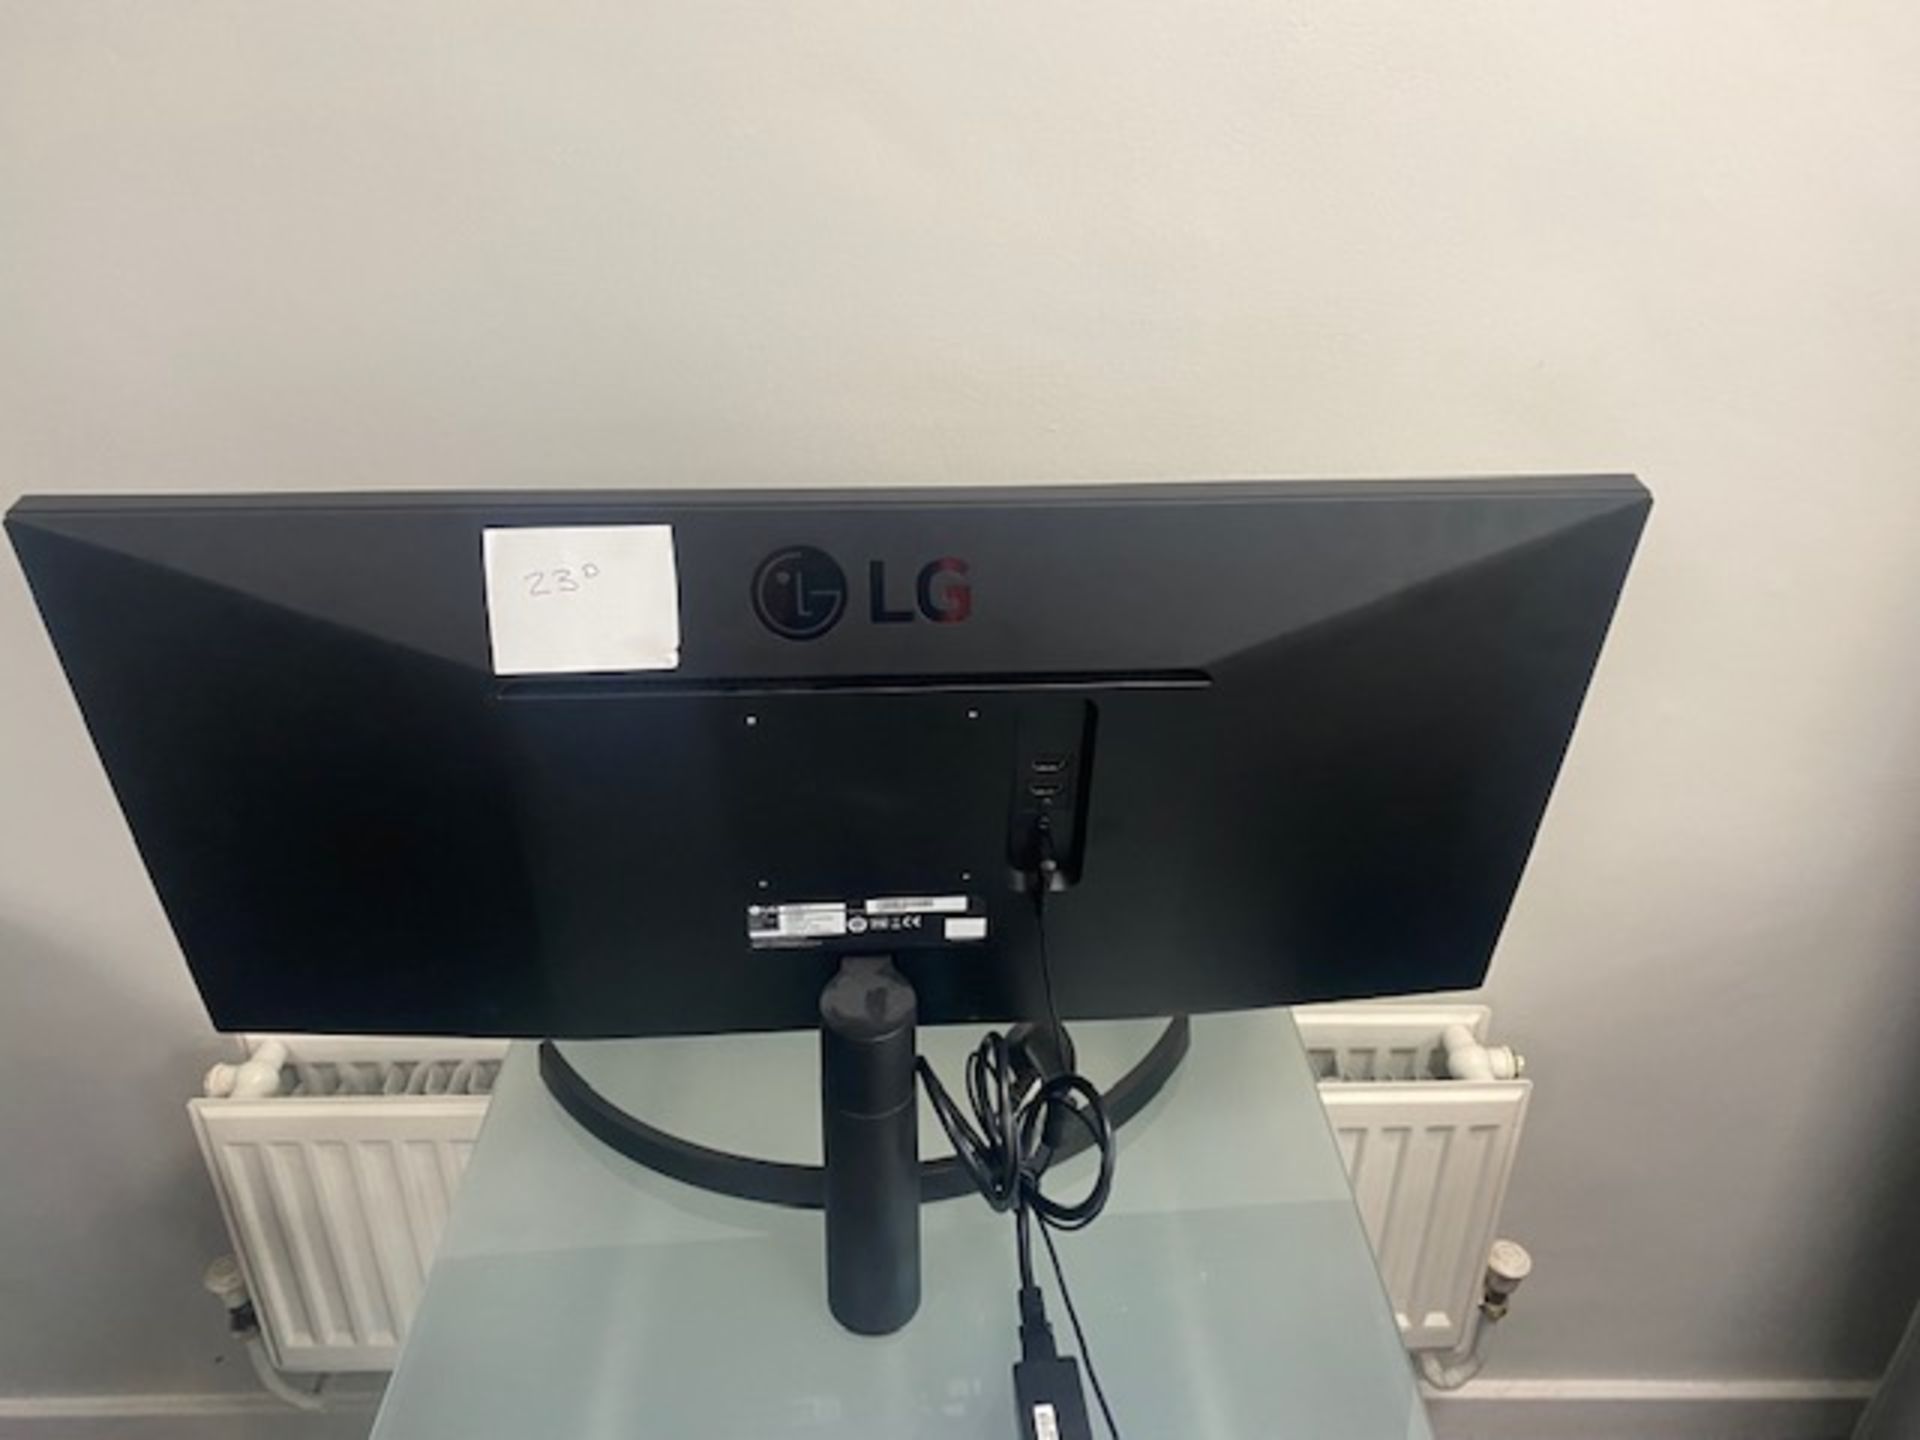 LG 29” Computer monitor, model no - 29WK500-P - Image 2 of 3